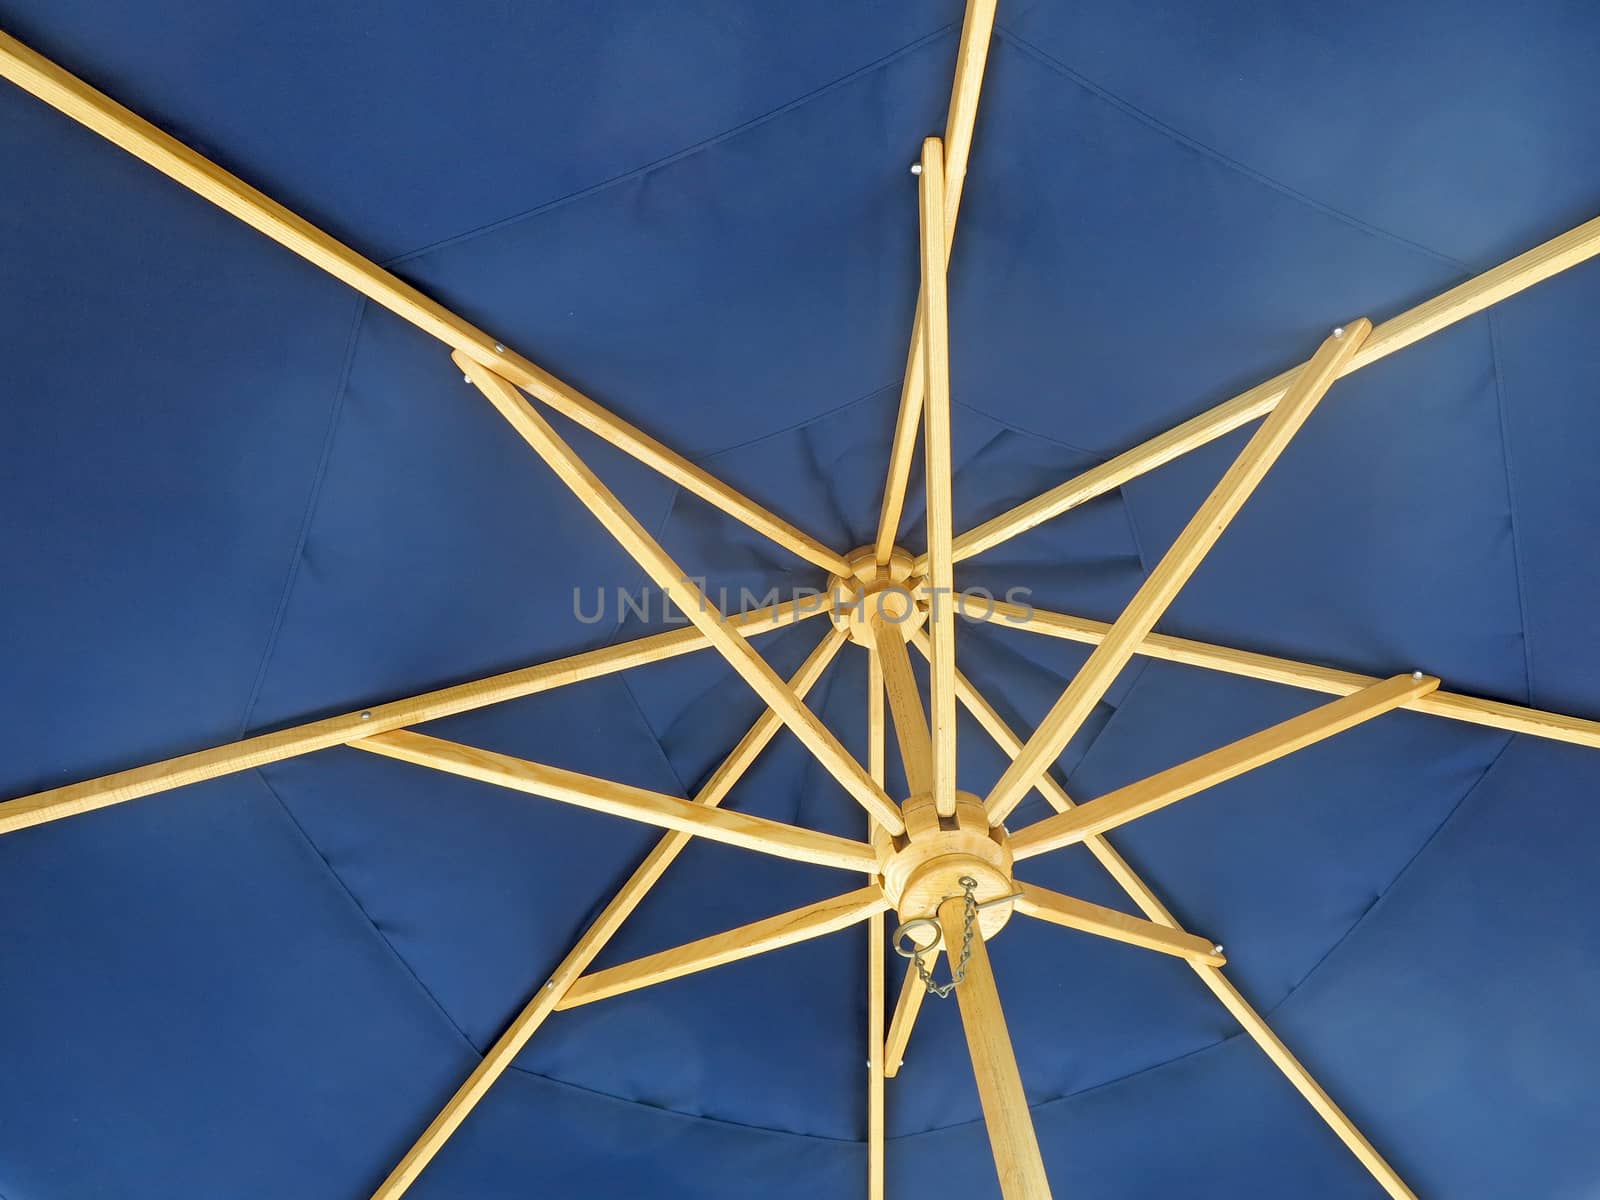 The inside on an open blue umbrella